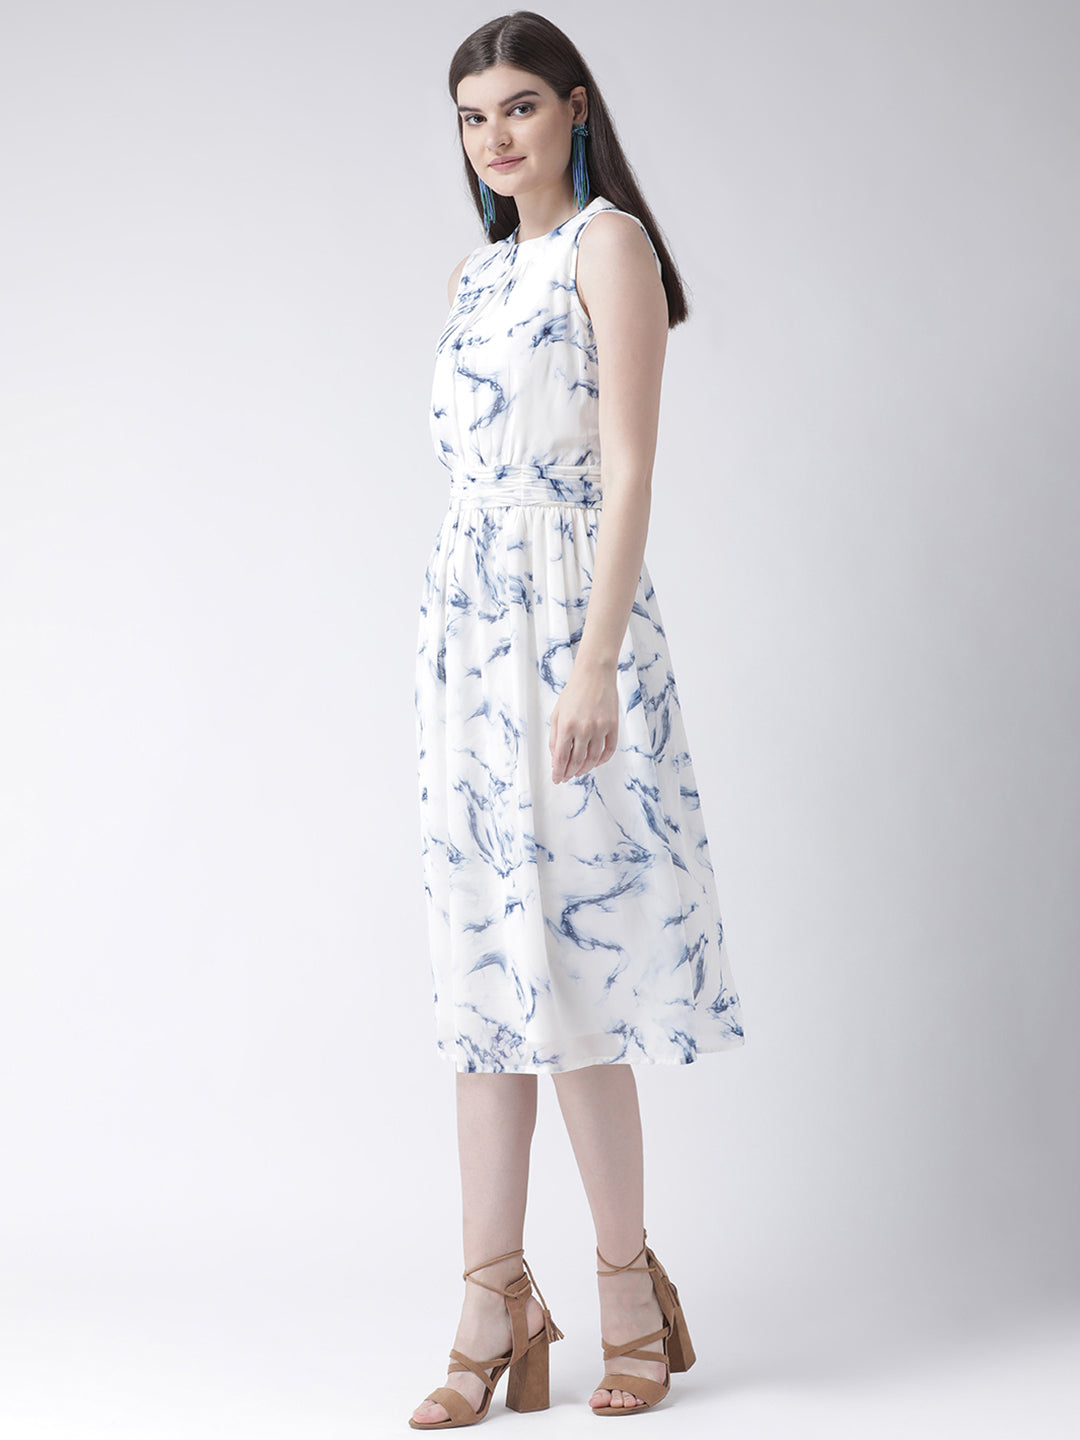 Ivory Sleeveless A-Line Dress